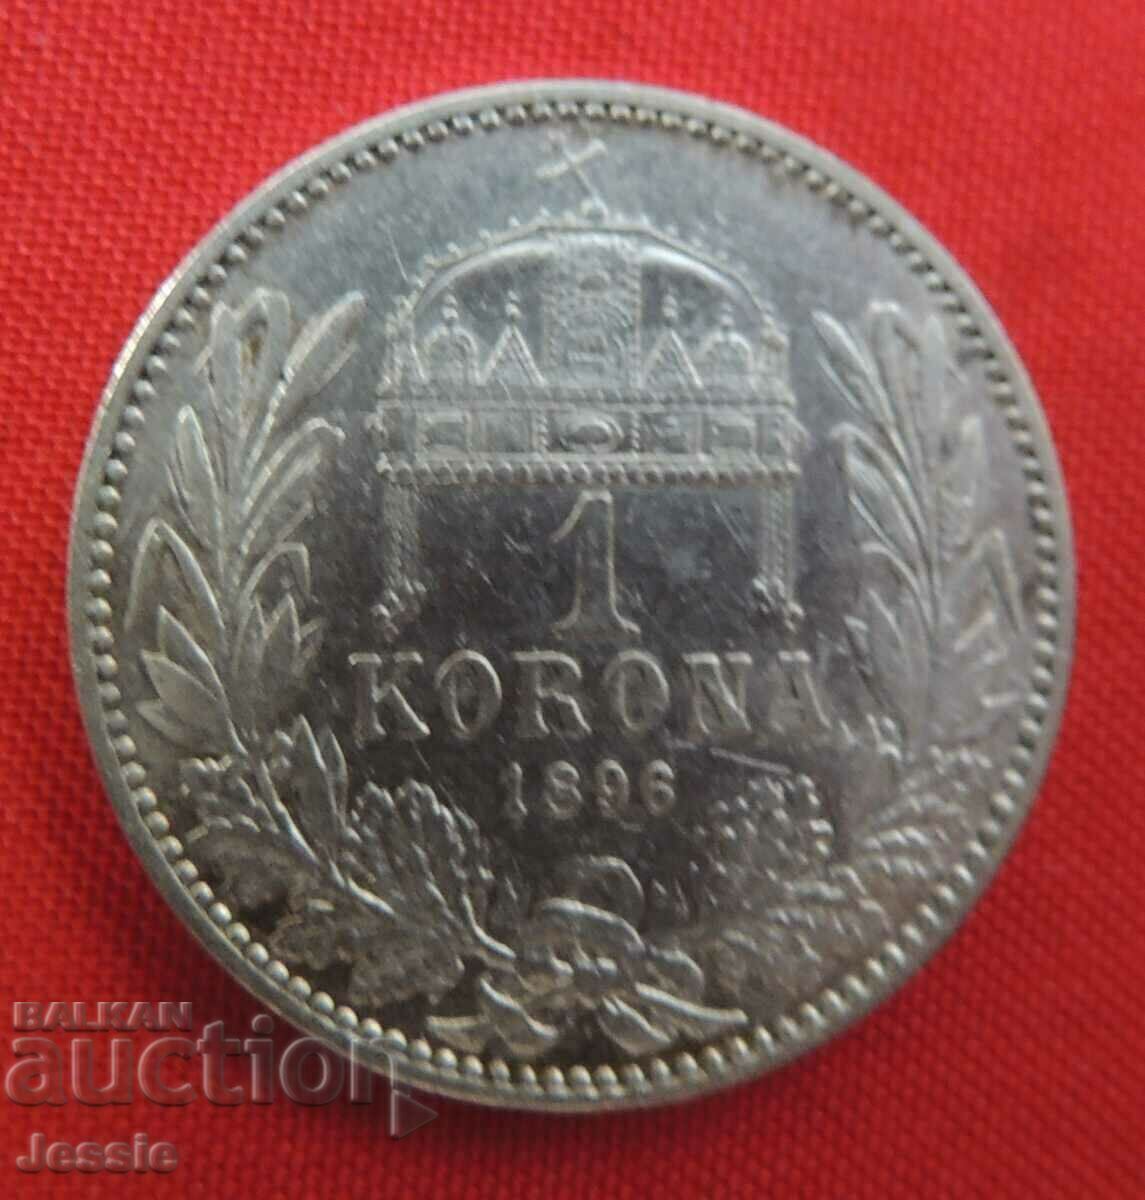 1 корона 1896 Австро - Унгария / за Унгария /